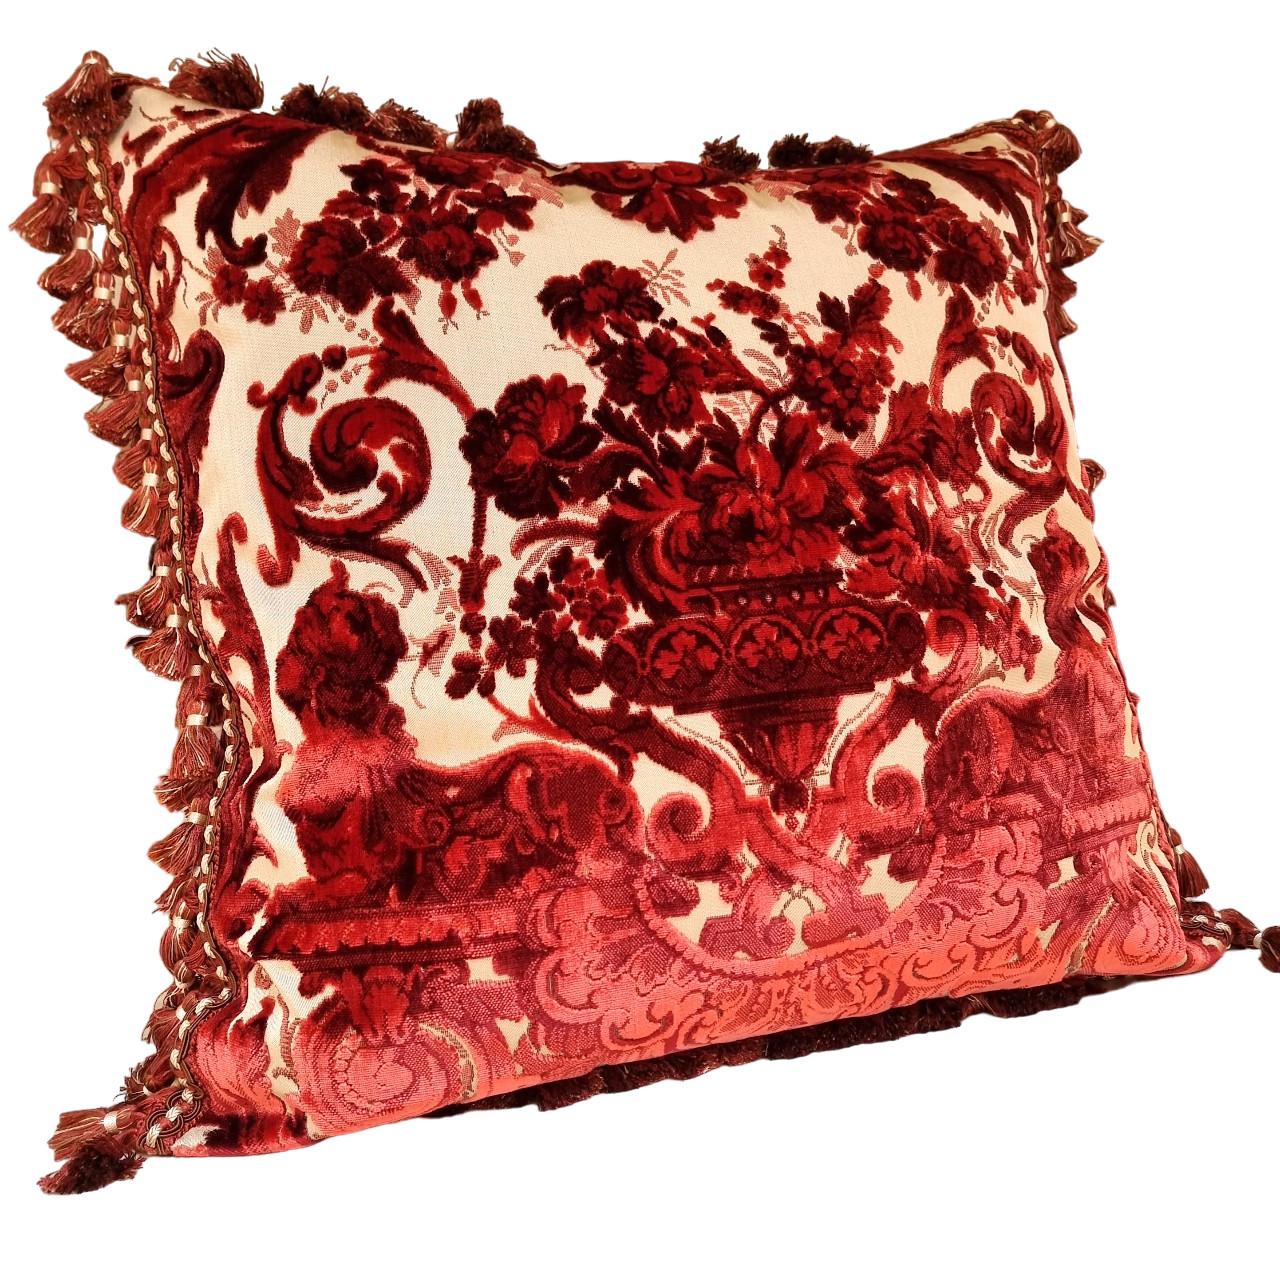 Ce magnifique coussin décoratif est fait à la main en velours de soie Luigi Bevilacqua - motif Grottesche, design du 19ème siècle - en rouge multicolore sur fond beige agrémenté de franges de pompons rouges et ivoires le long des quatre bords. Le